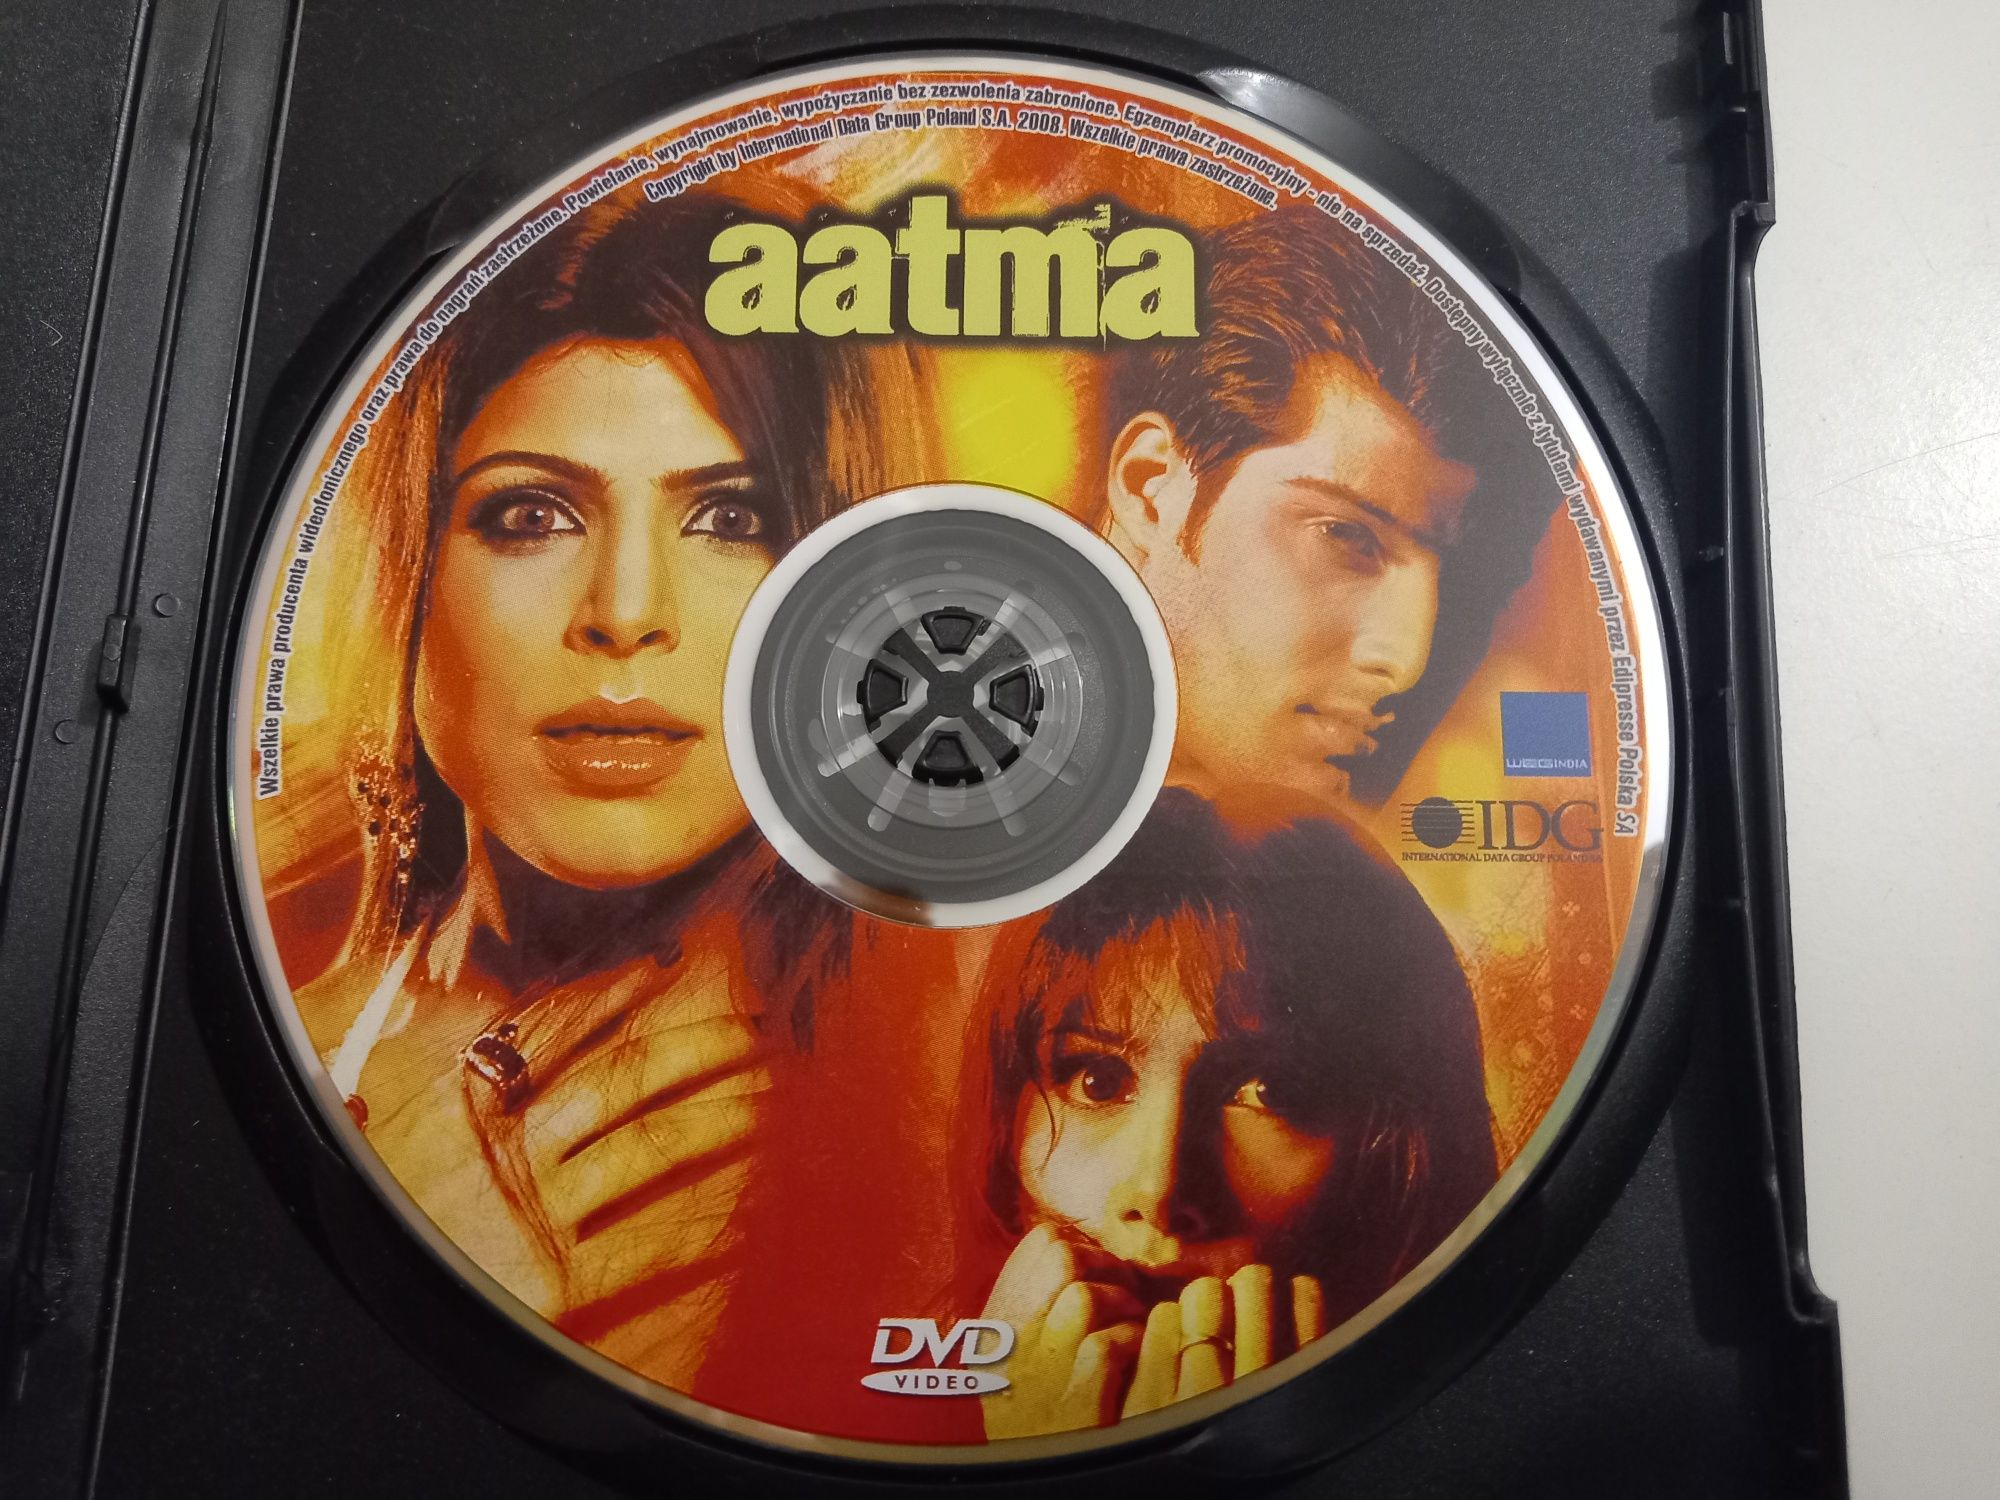 Film Aatma DVD Video